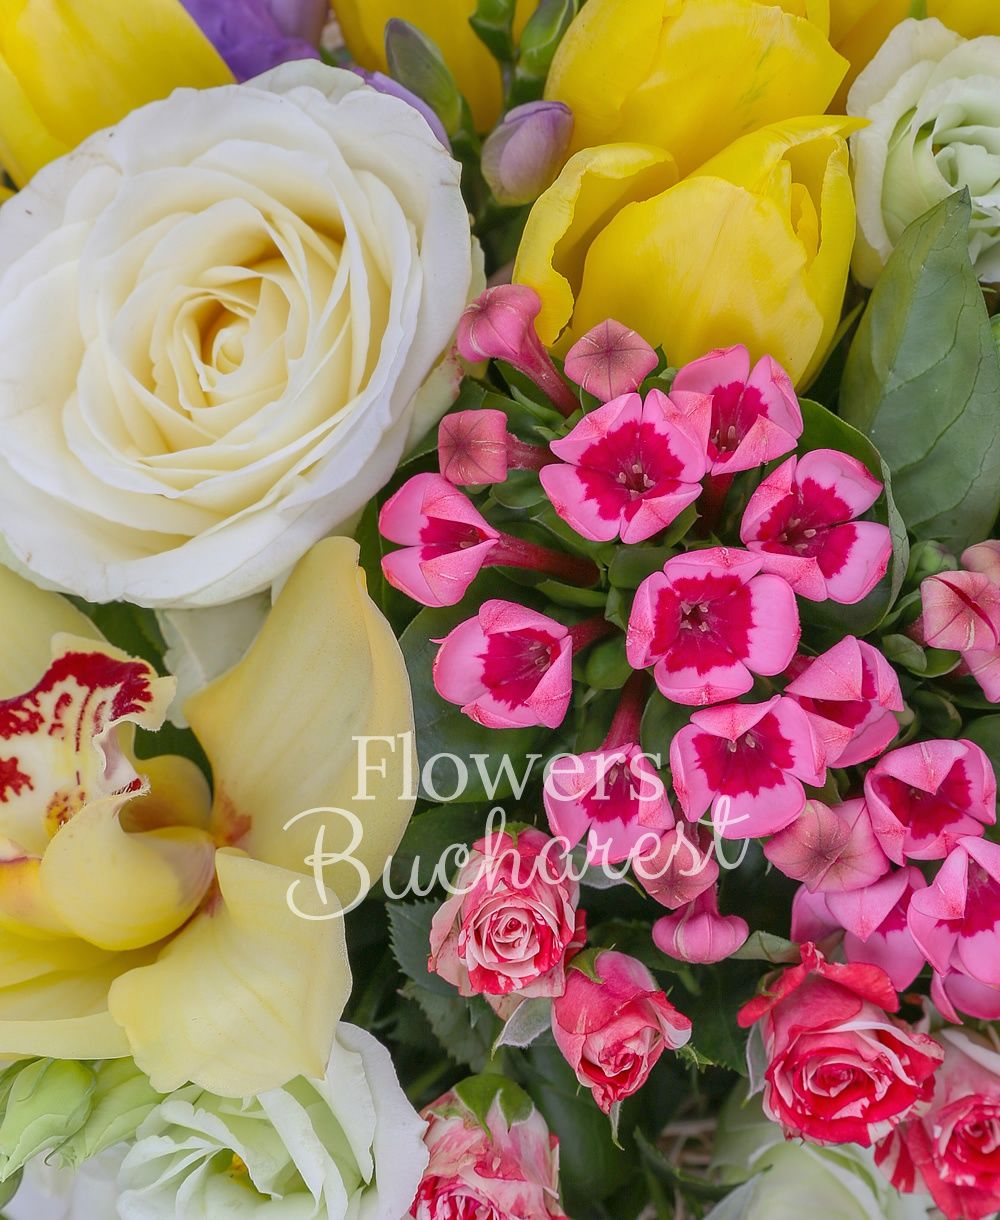 3 white roses, 3 bouvardia, 5 white lisianthus, 3 alstroemeria, 5 purple freesias, 3 pink miniroses, 5 yellow tulips, greenery